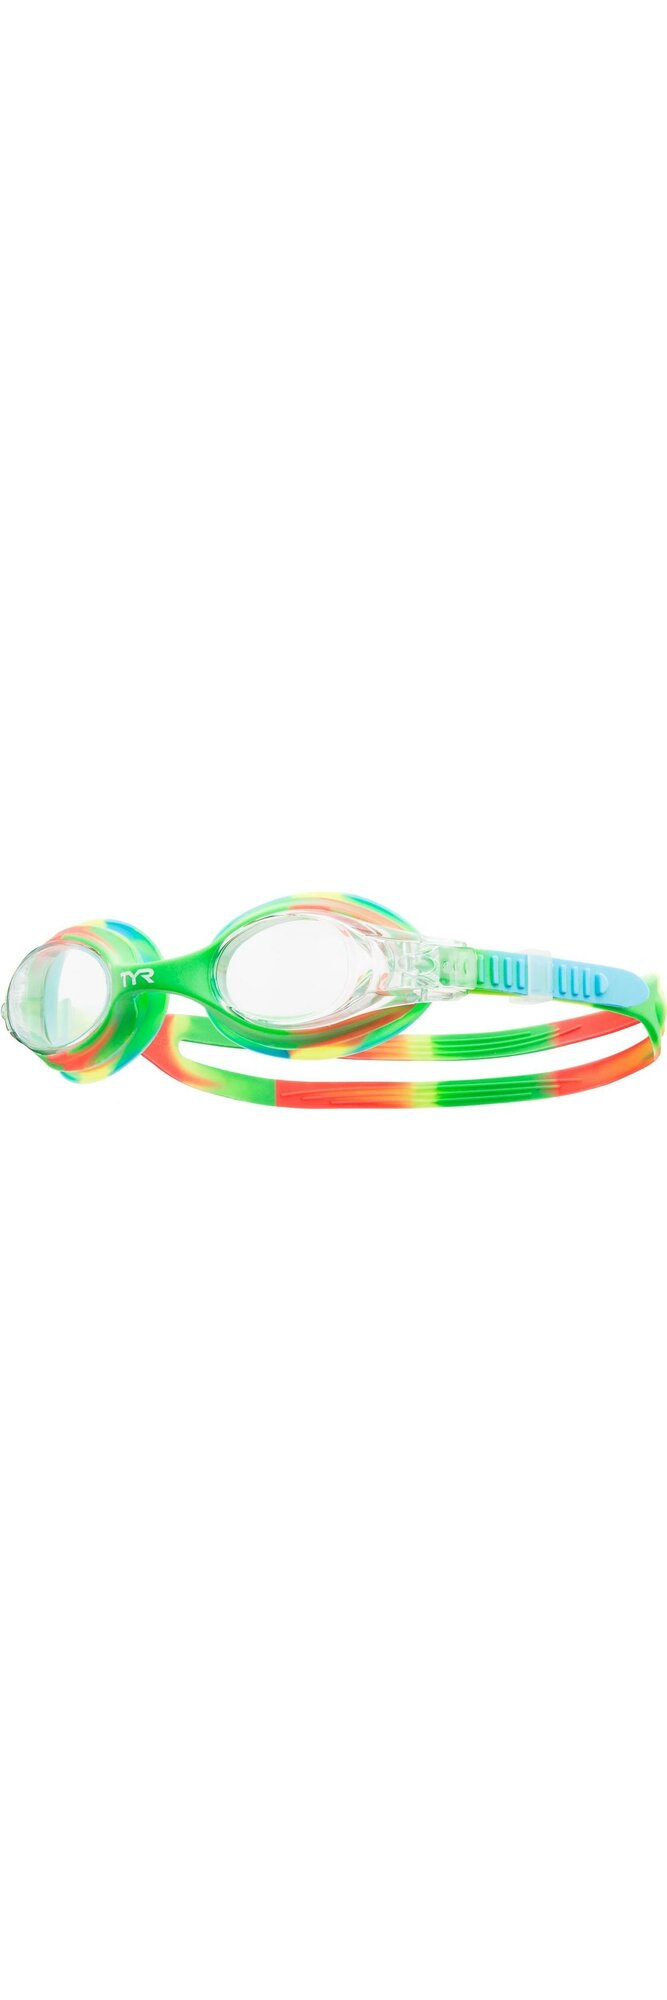 Очки для плавания TYR Swimple Tie Dye Зеленый